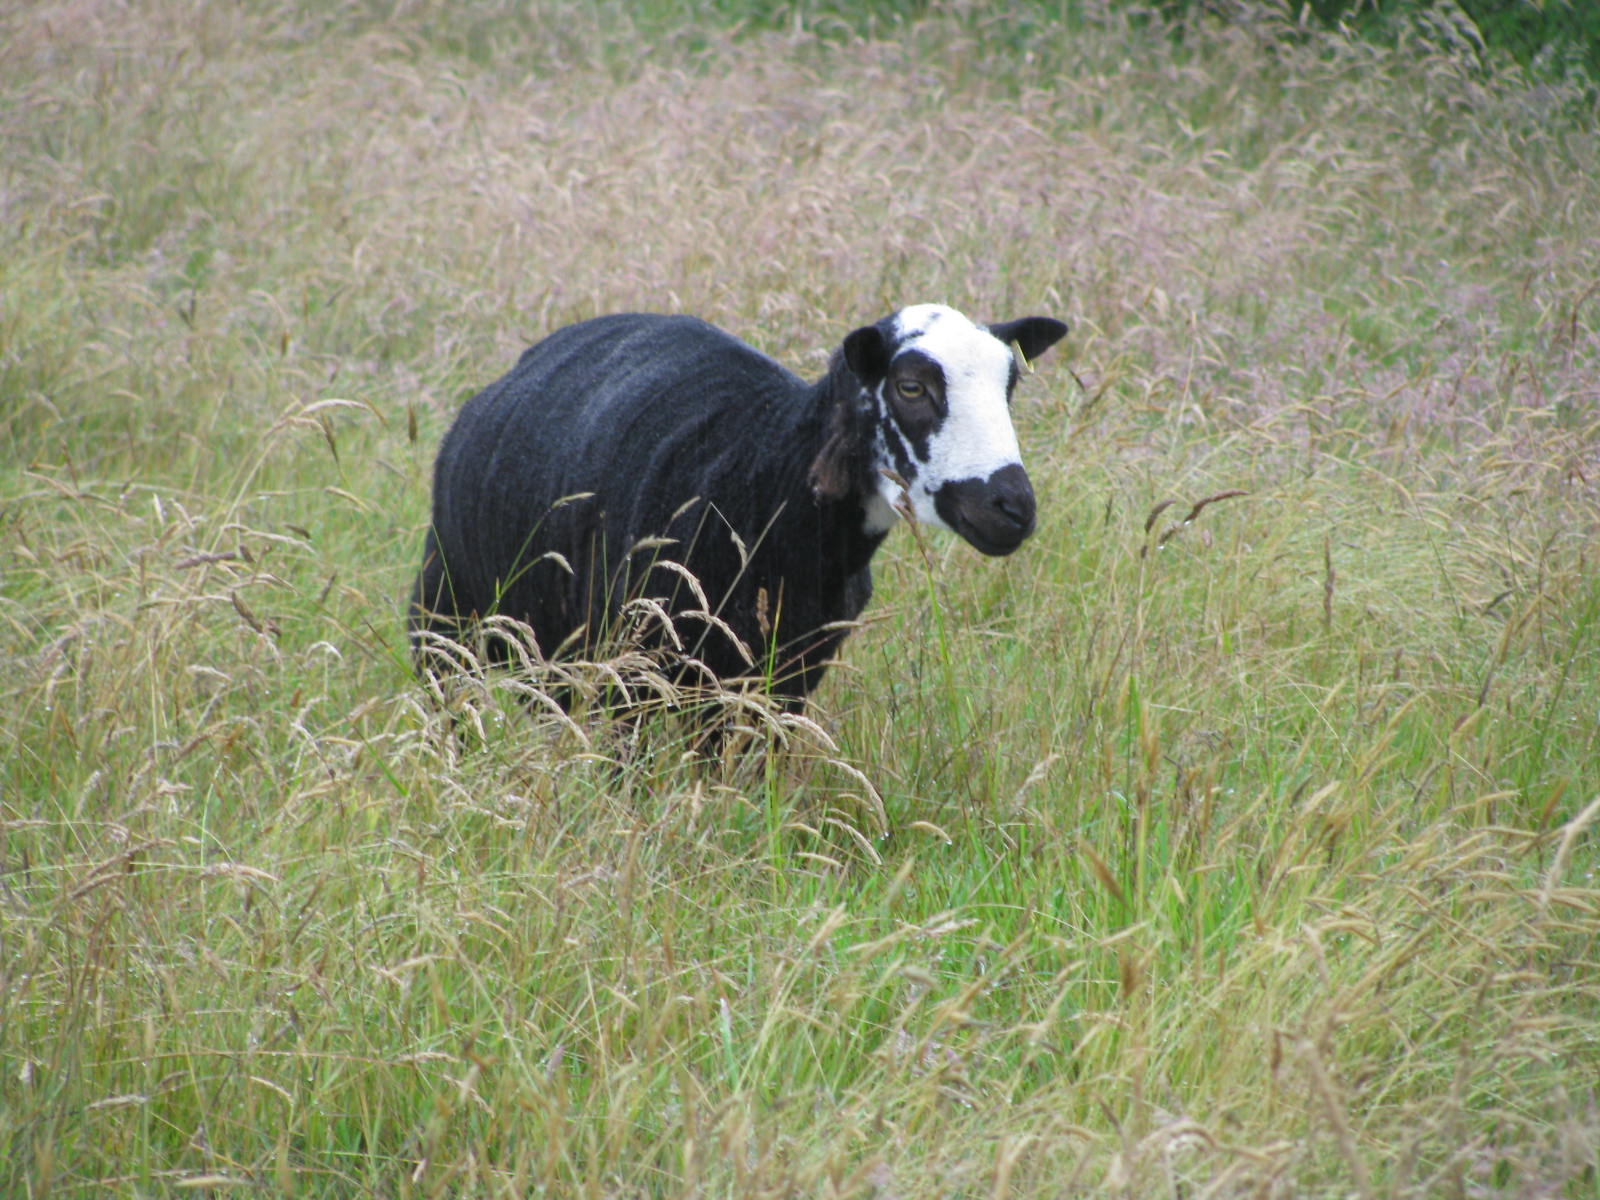 A shawn sheep